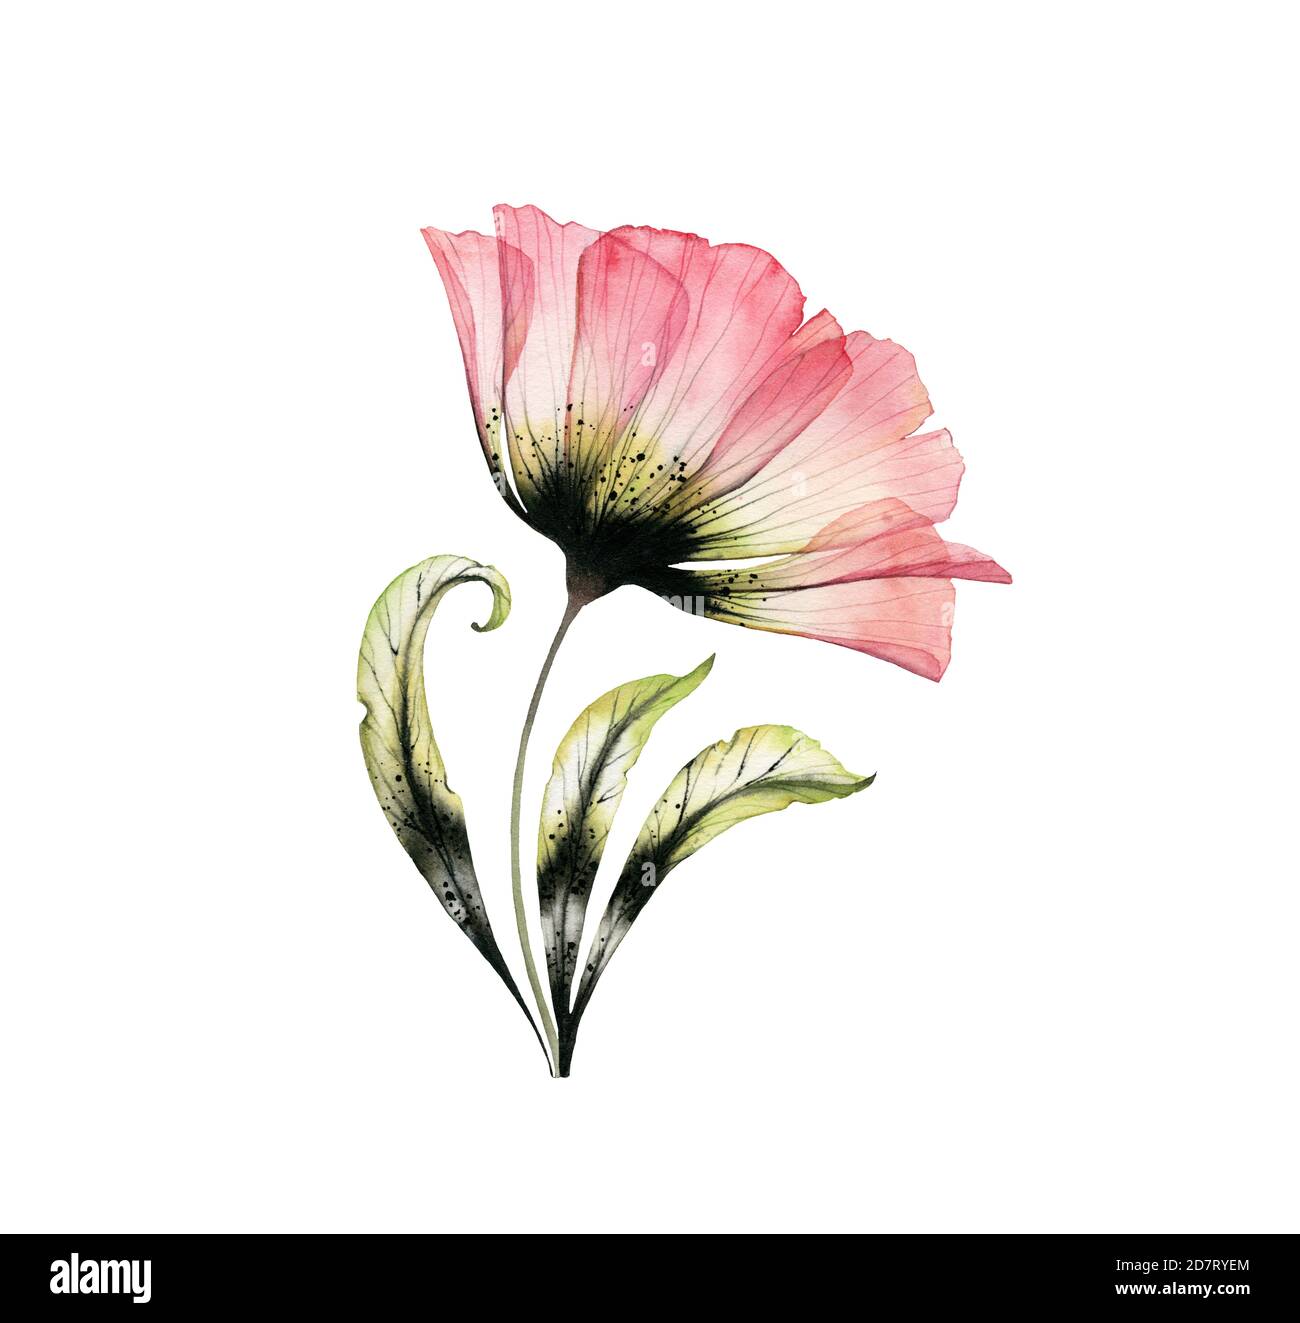 Aquarell-Rose. Rosa und schwarze Farbe. Transparente große Blume isoliert auf weiß. Handbemaltes Kunstwerk mit detaillierten Blütenblättern. Botanische Abbildung Stockfoto